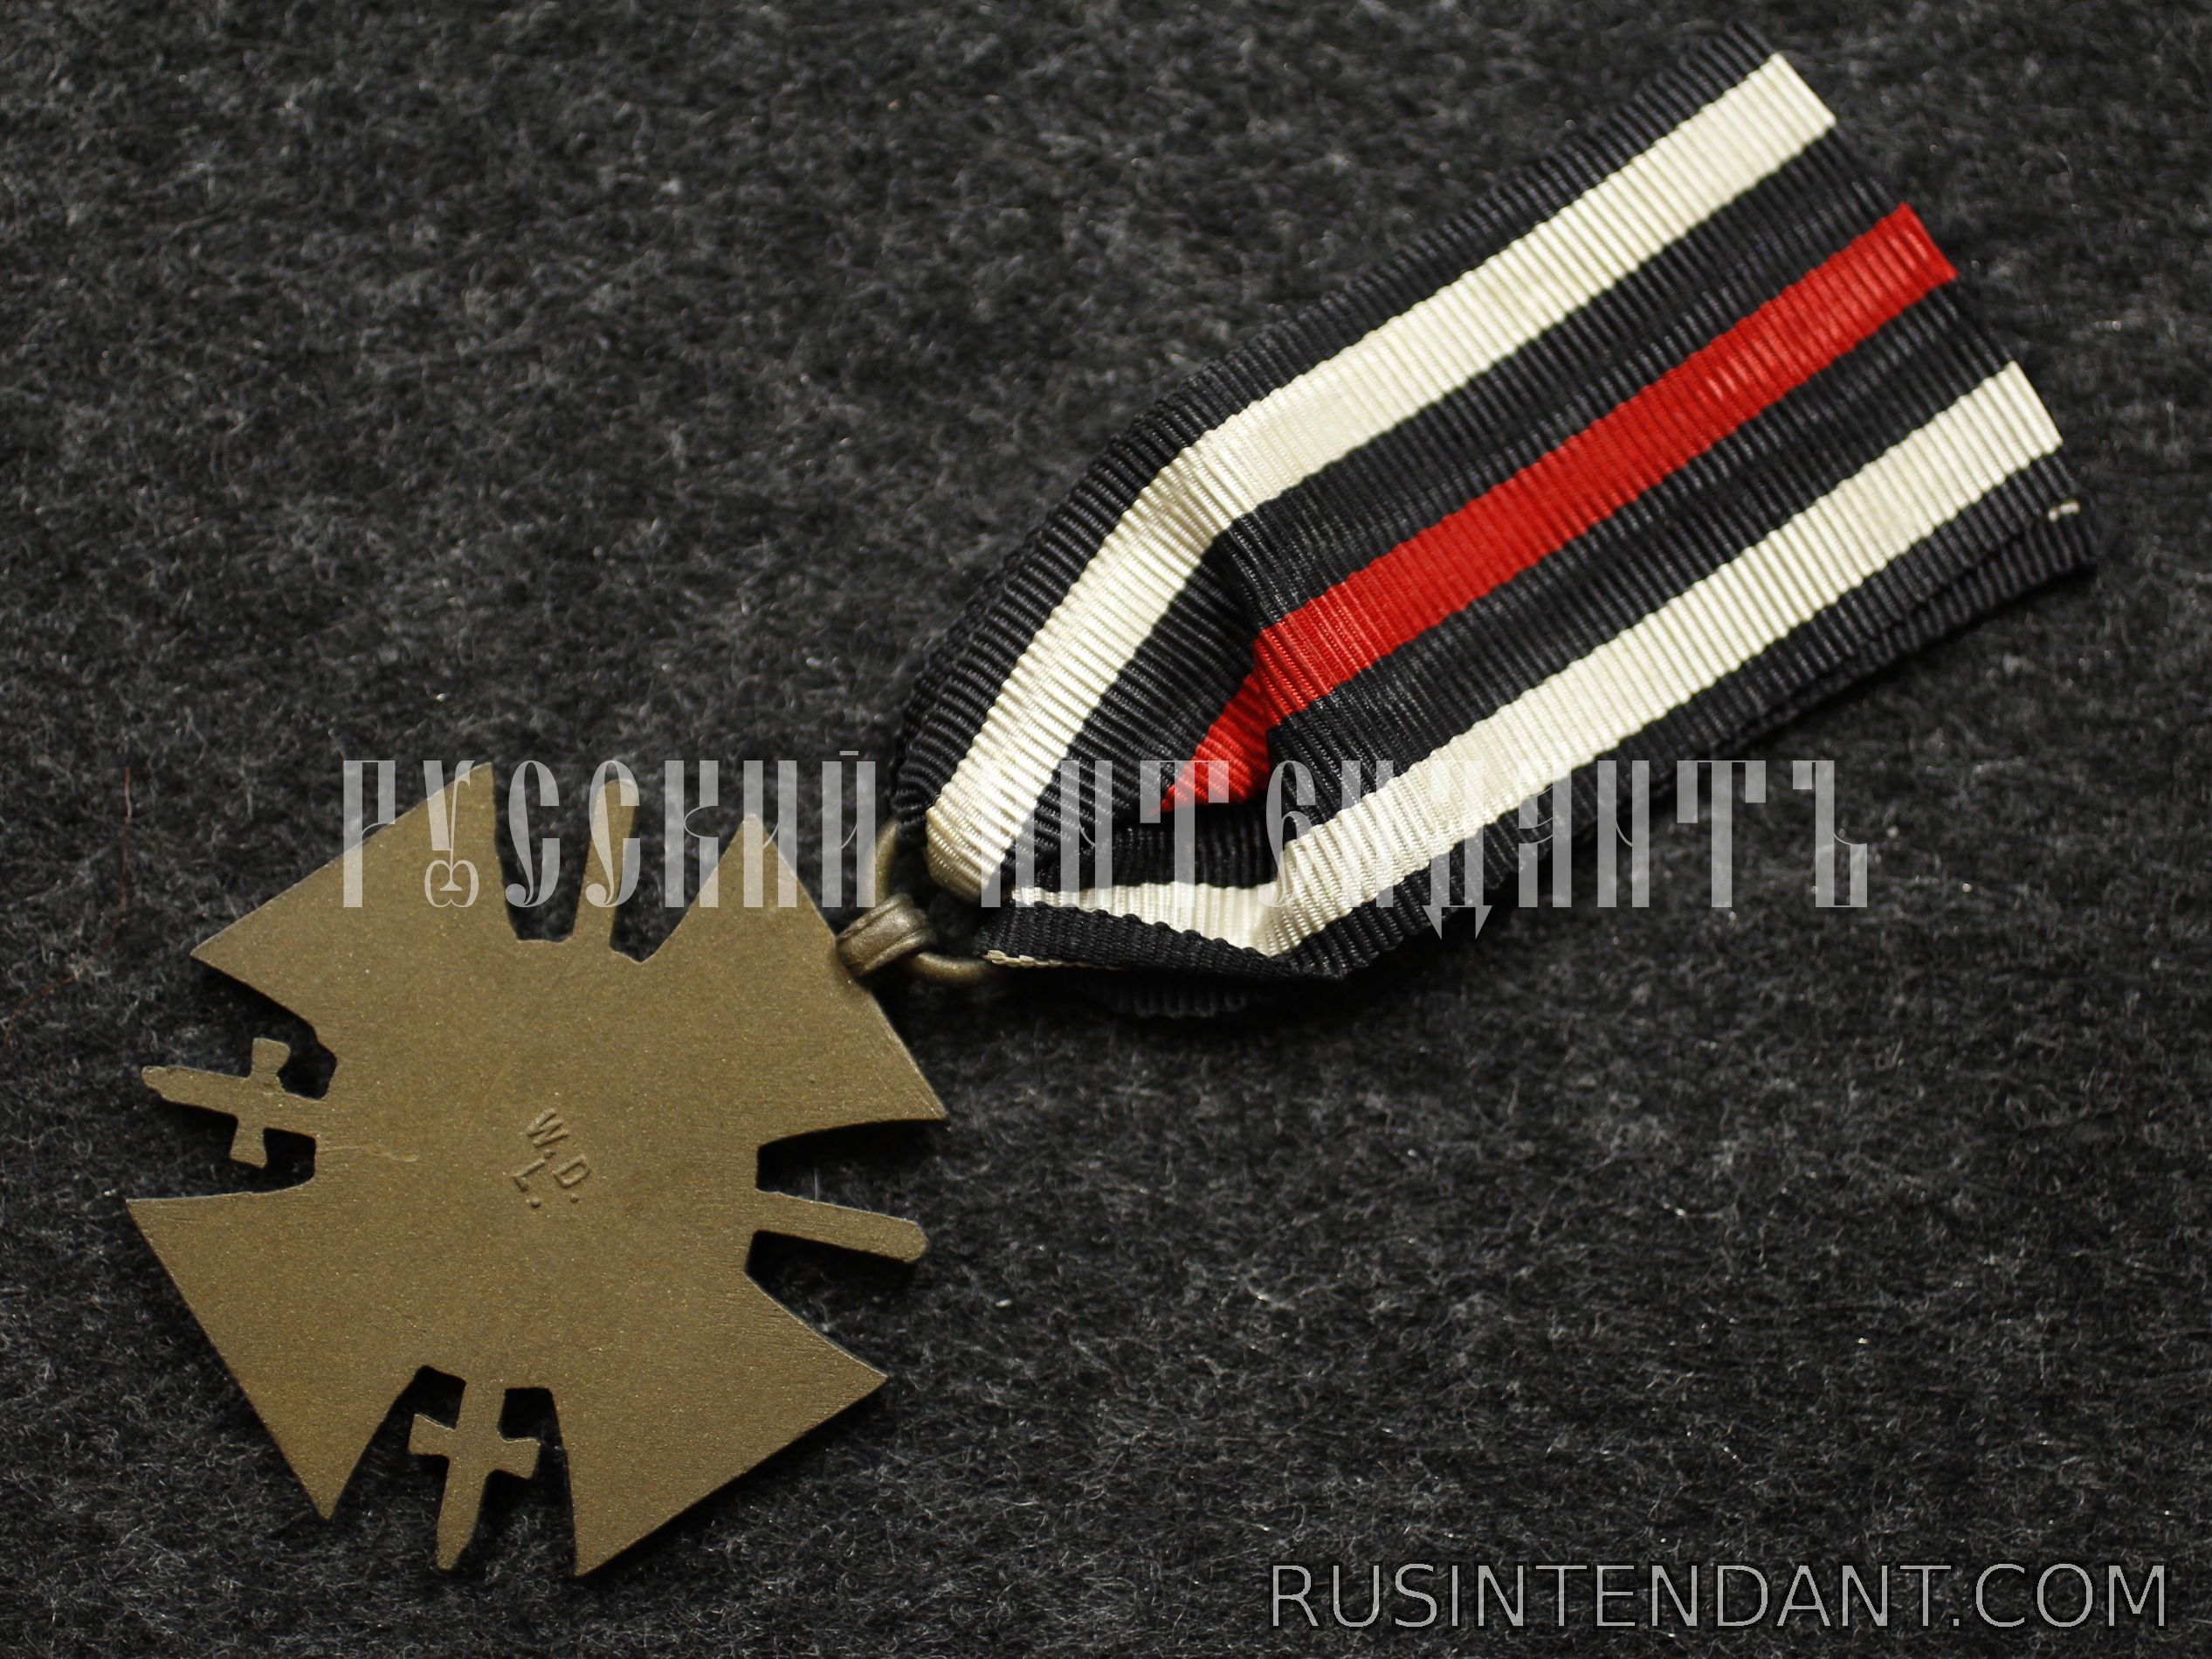 Фото 4: Почётный крест Мировой войны 1914-1918 